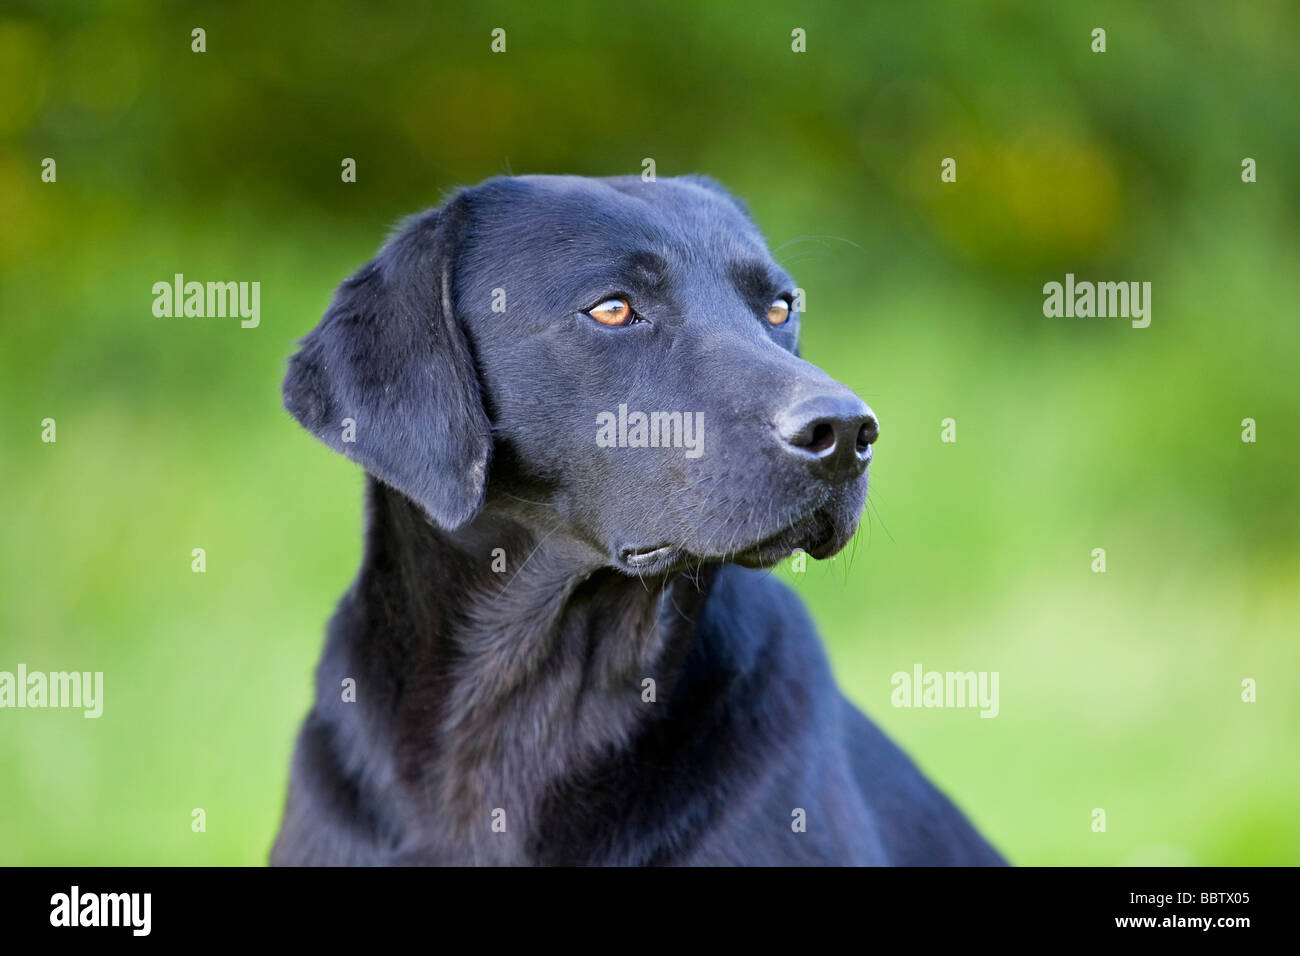 black labrador retriever working dog Stock Photo